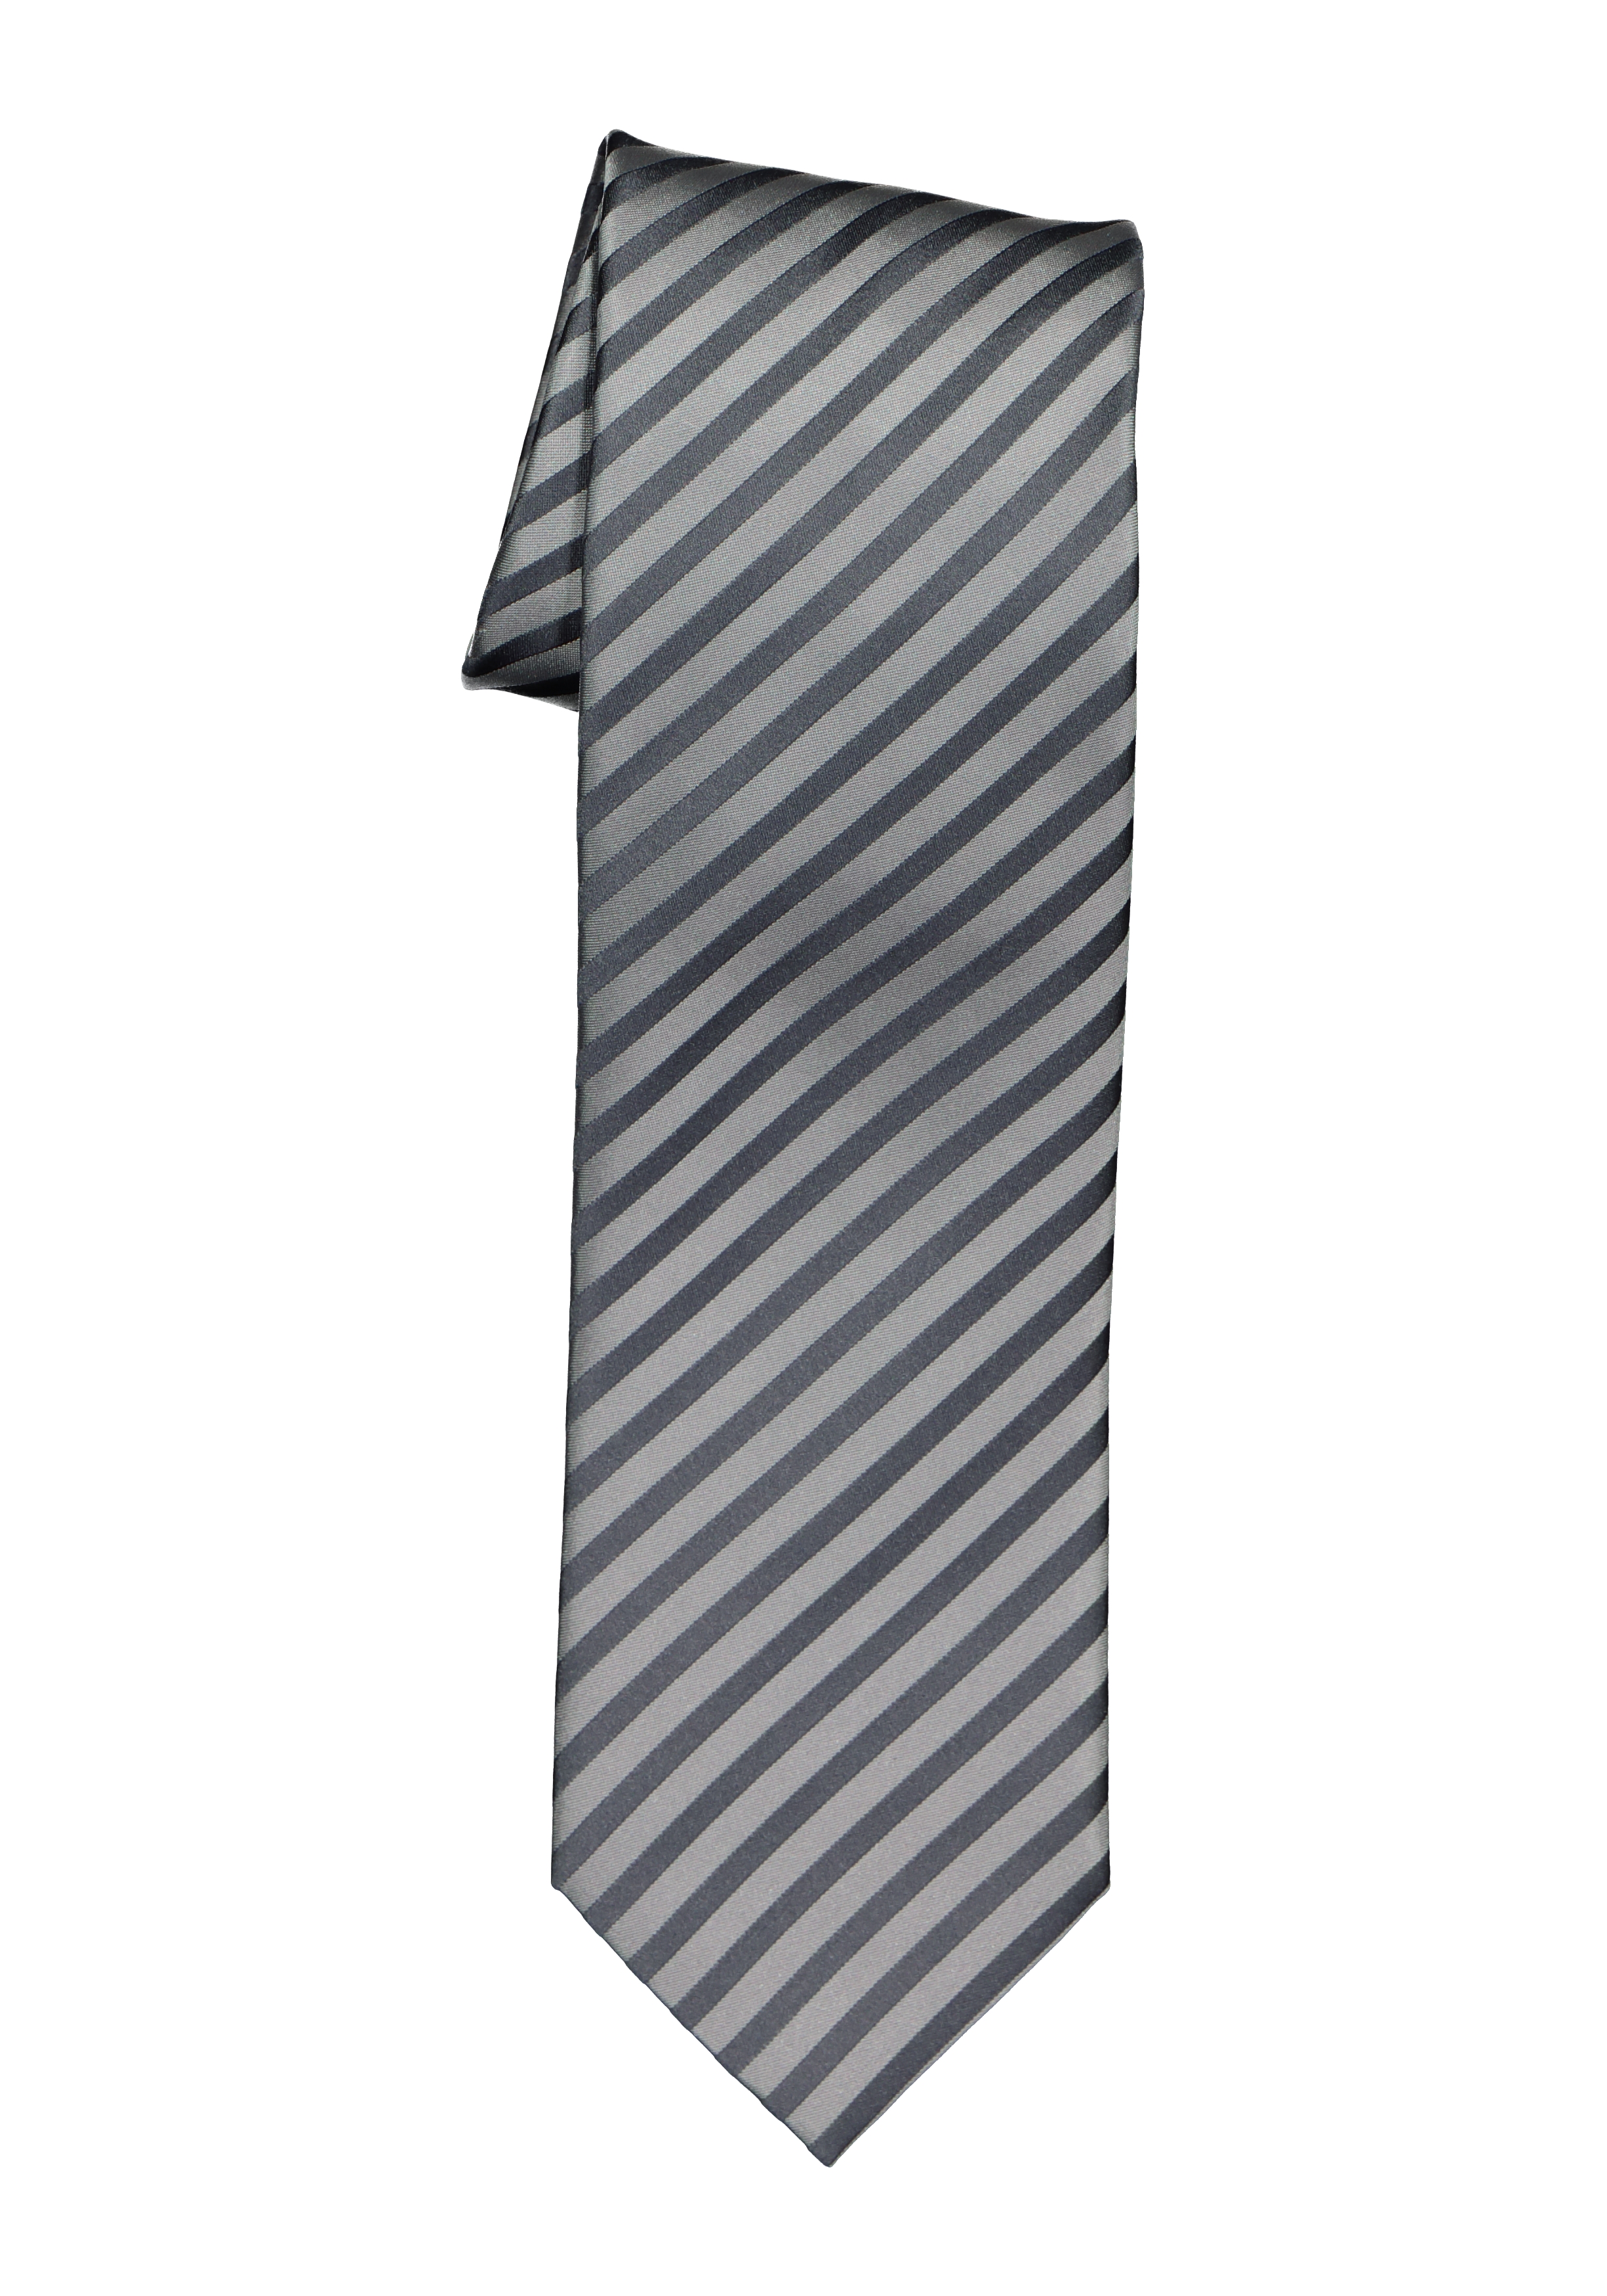 rem Informeer Wafel OLYMP stropdas, grijs gestreept - bestel online met gratis verzending